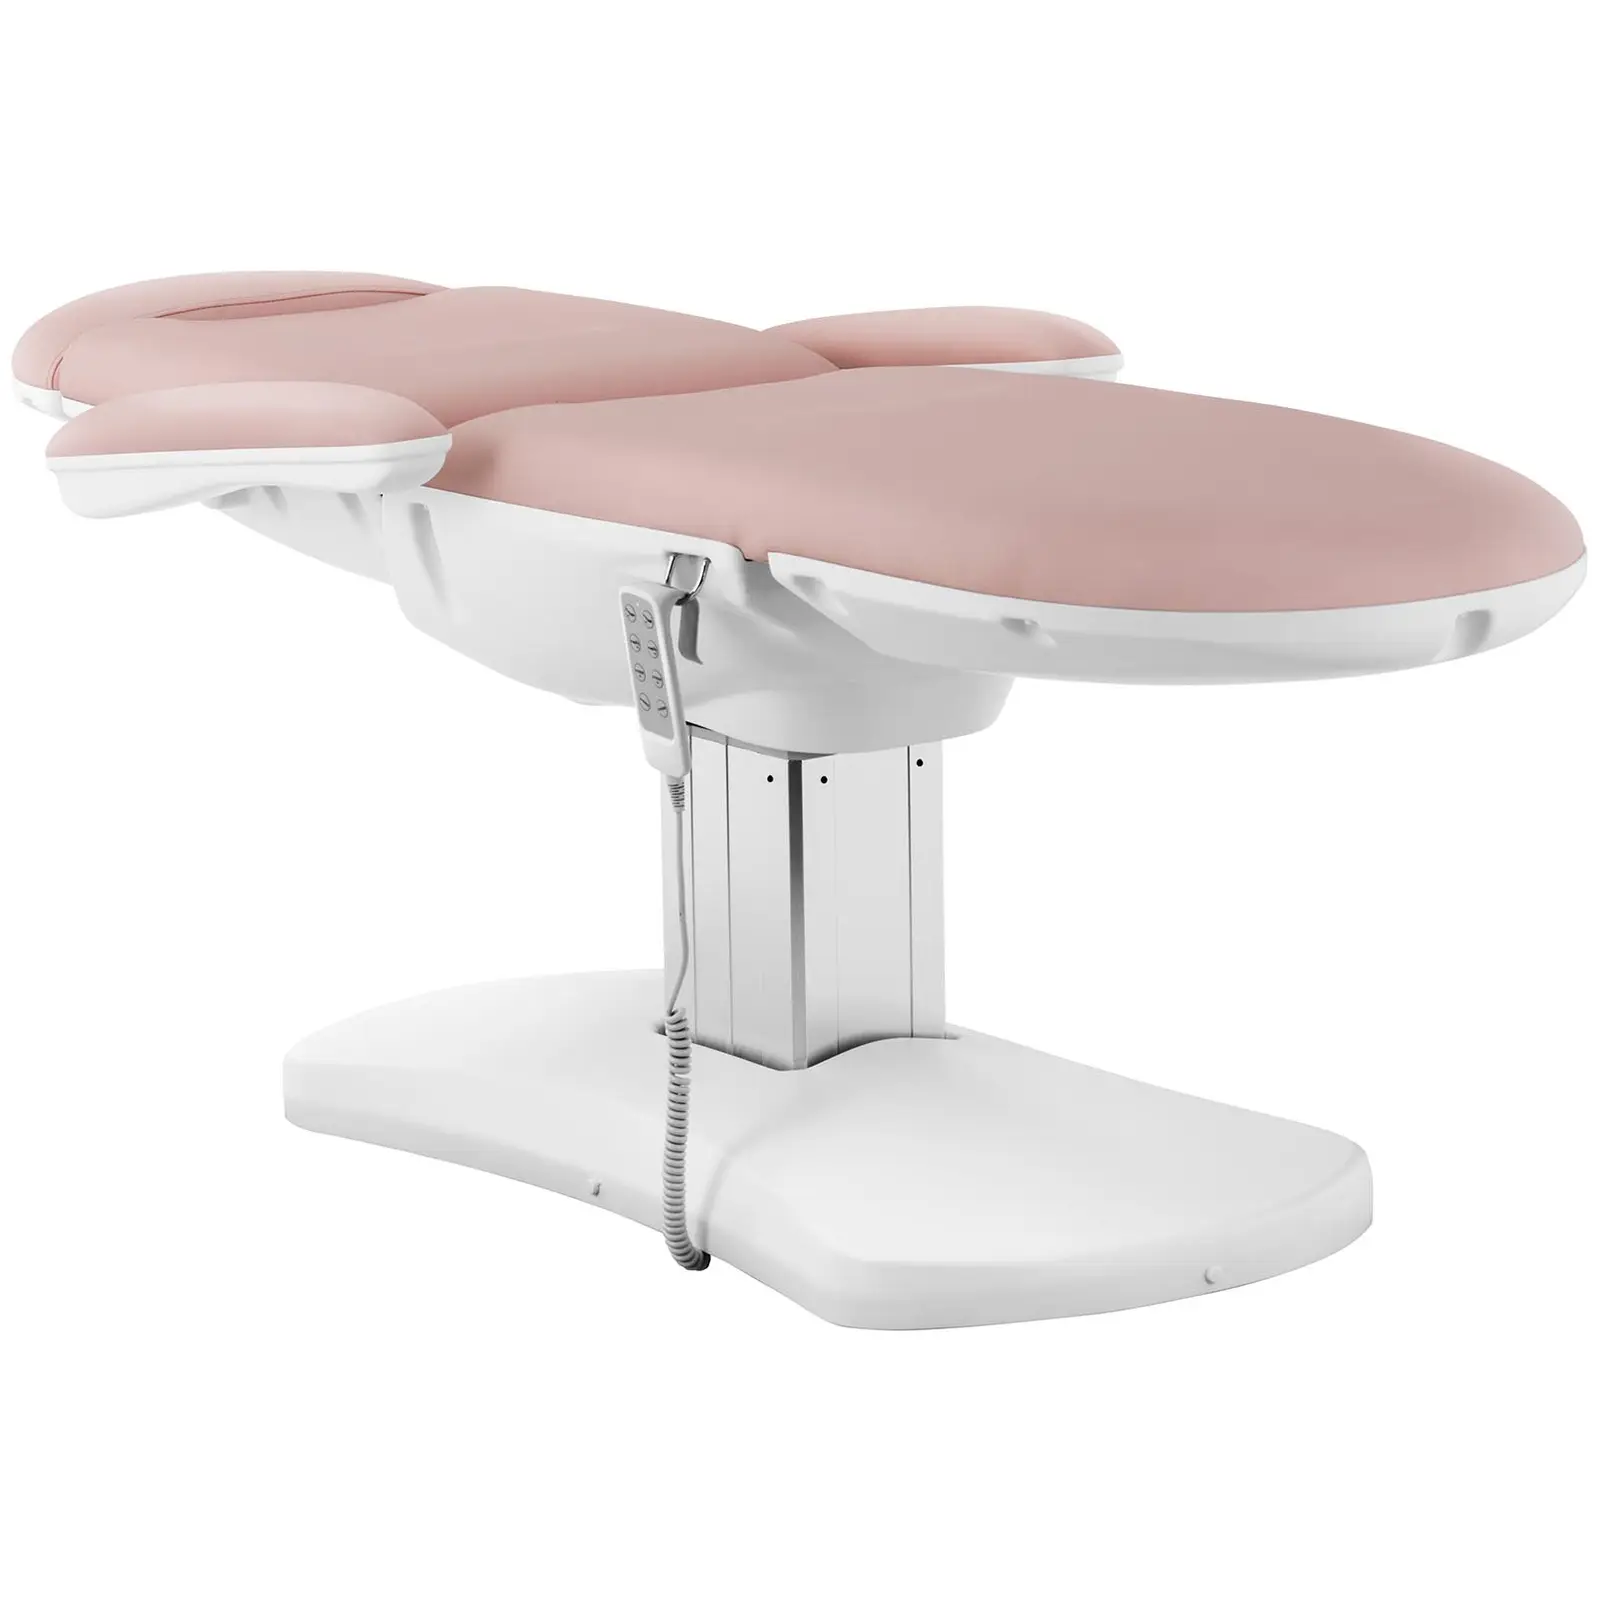 Fotel kosmetyczny i krzesło kosmetyczne - pudrowy róż, białe